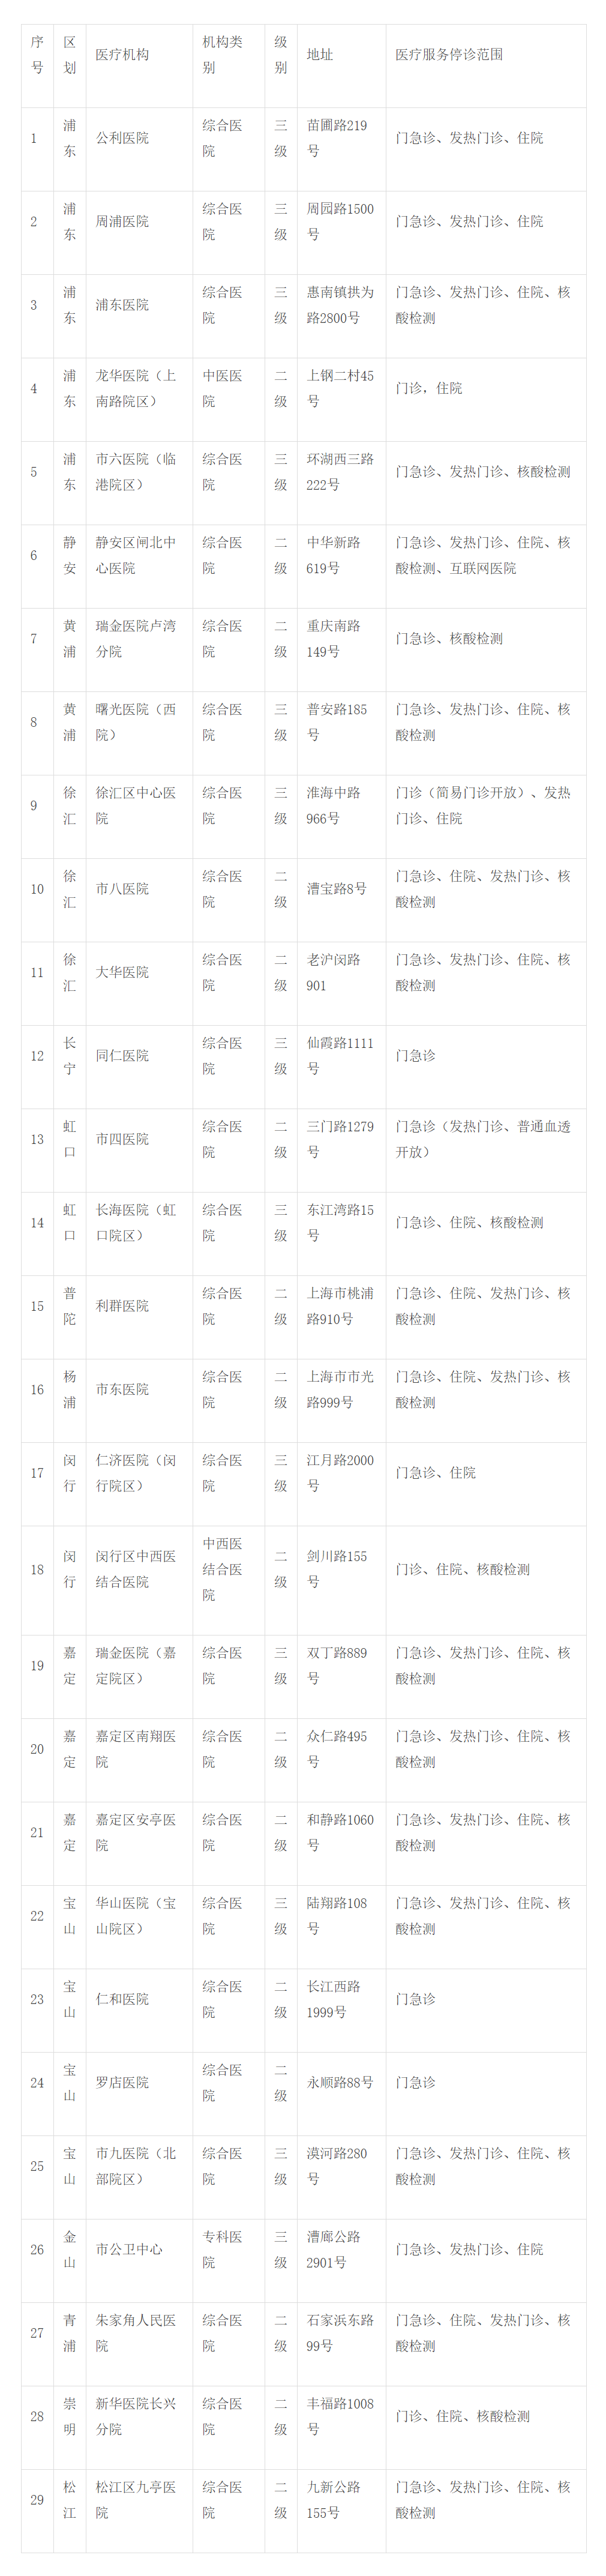 5月11日上海市、区主要医疗机构暂停医疗服务情况